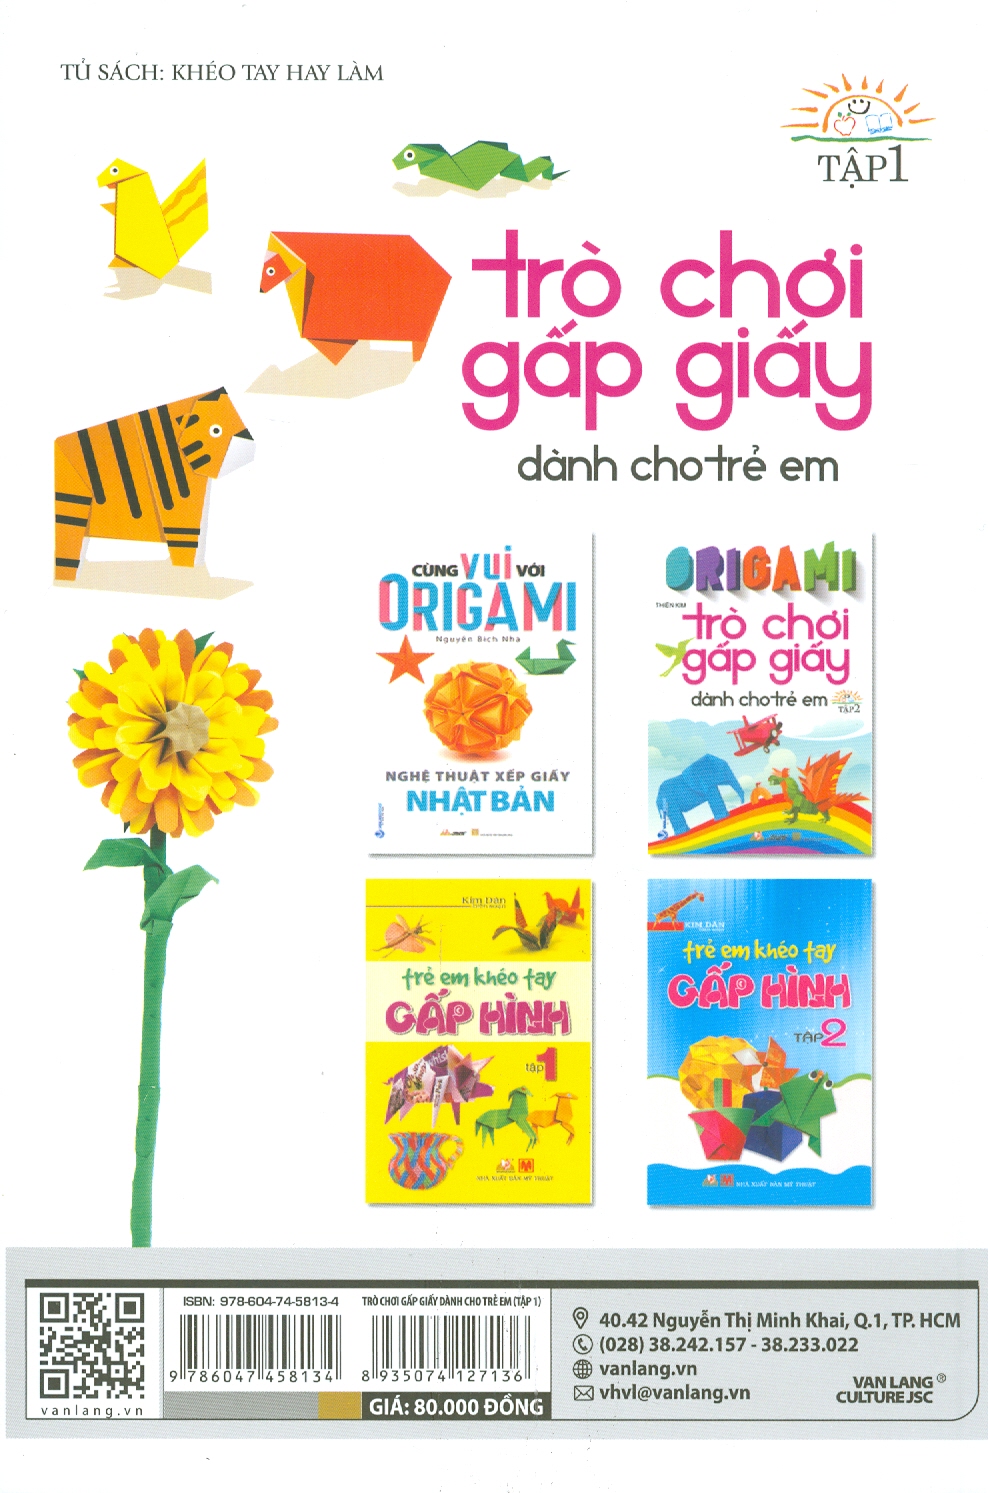 Origami Trò Chơi Gấp Giấy Dành Cho Trẻ Em - Tập 1